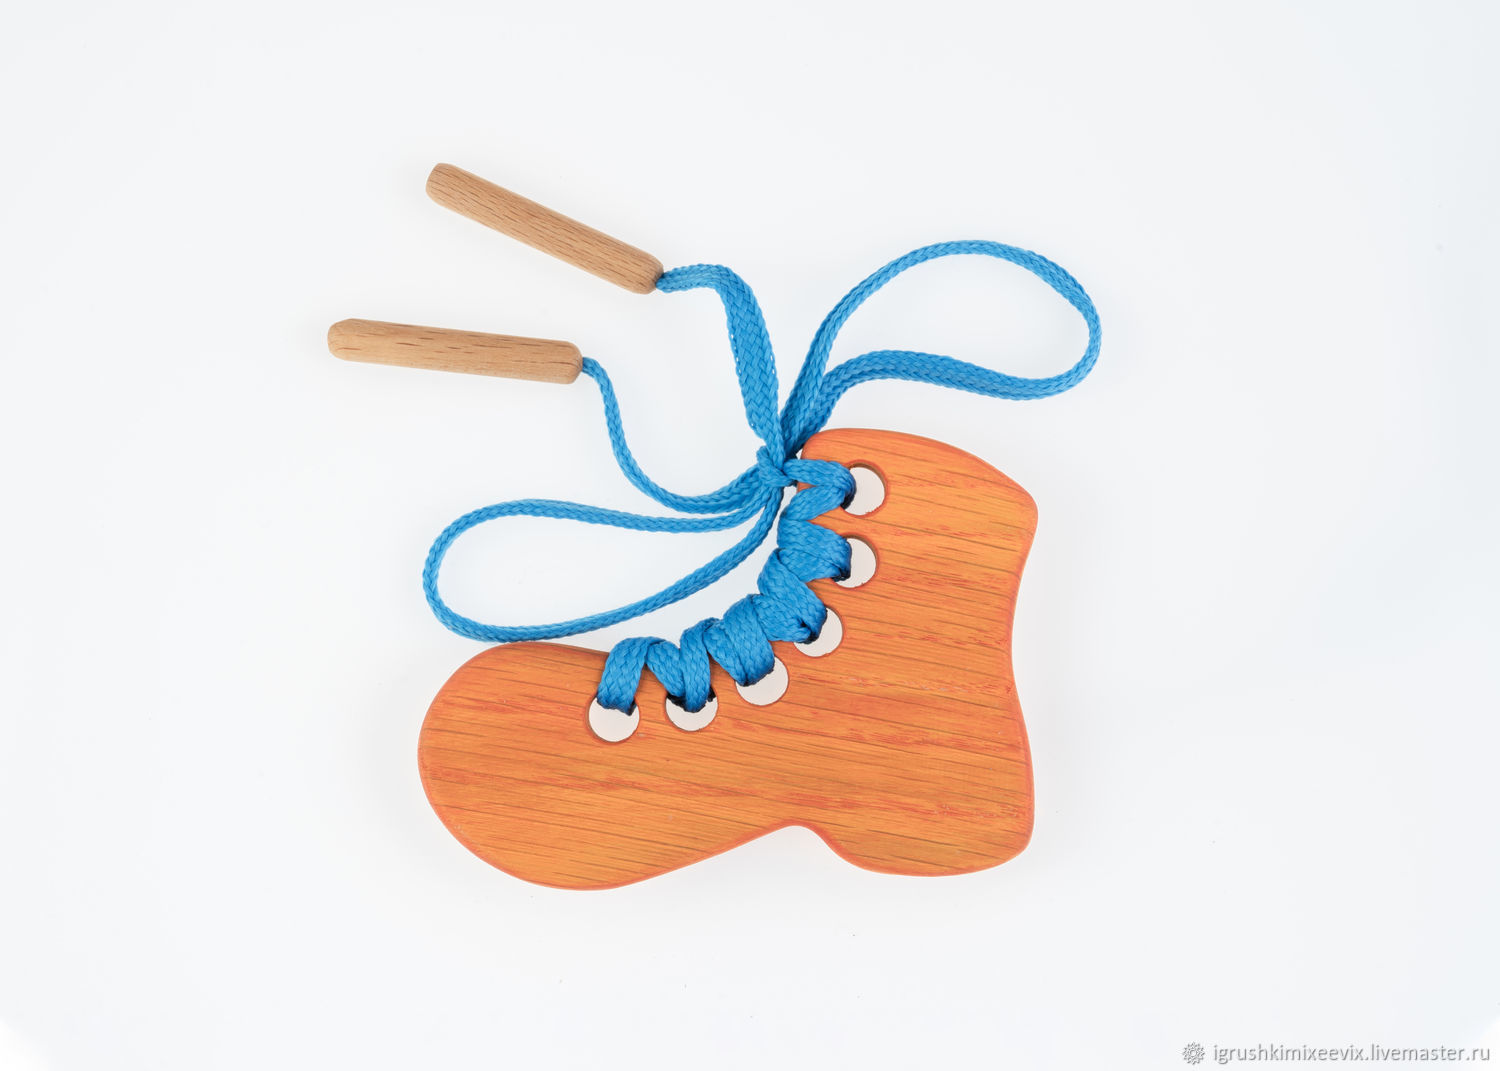 Шнуровка "Ботинок", деревянная развивающая игрушка, Игрушки-шнуровки, Смоленск,  Фото №1